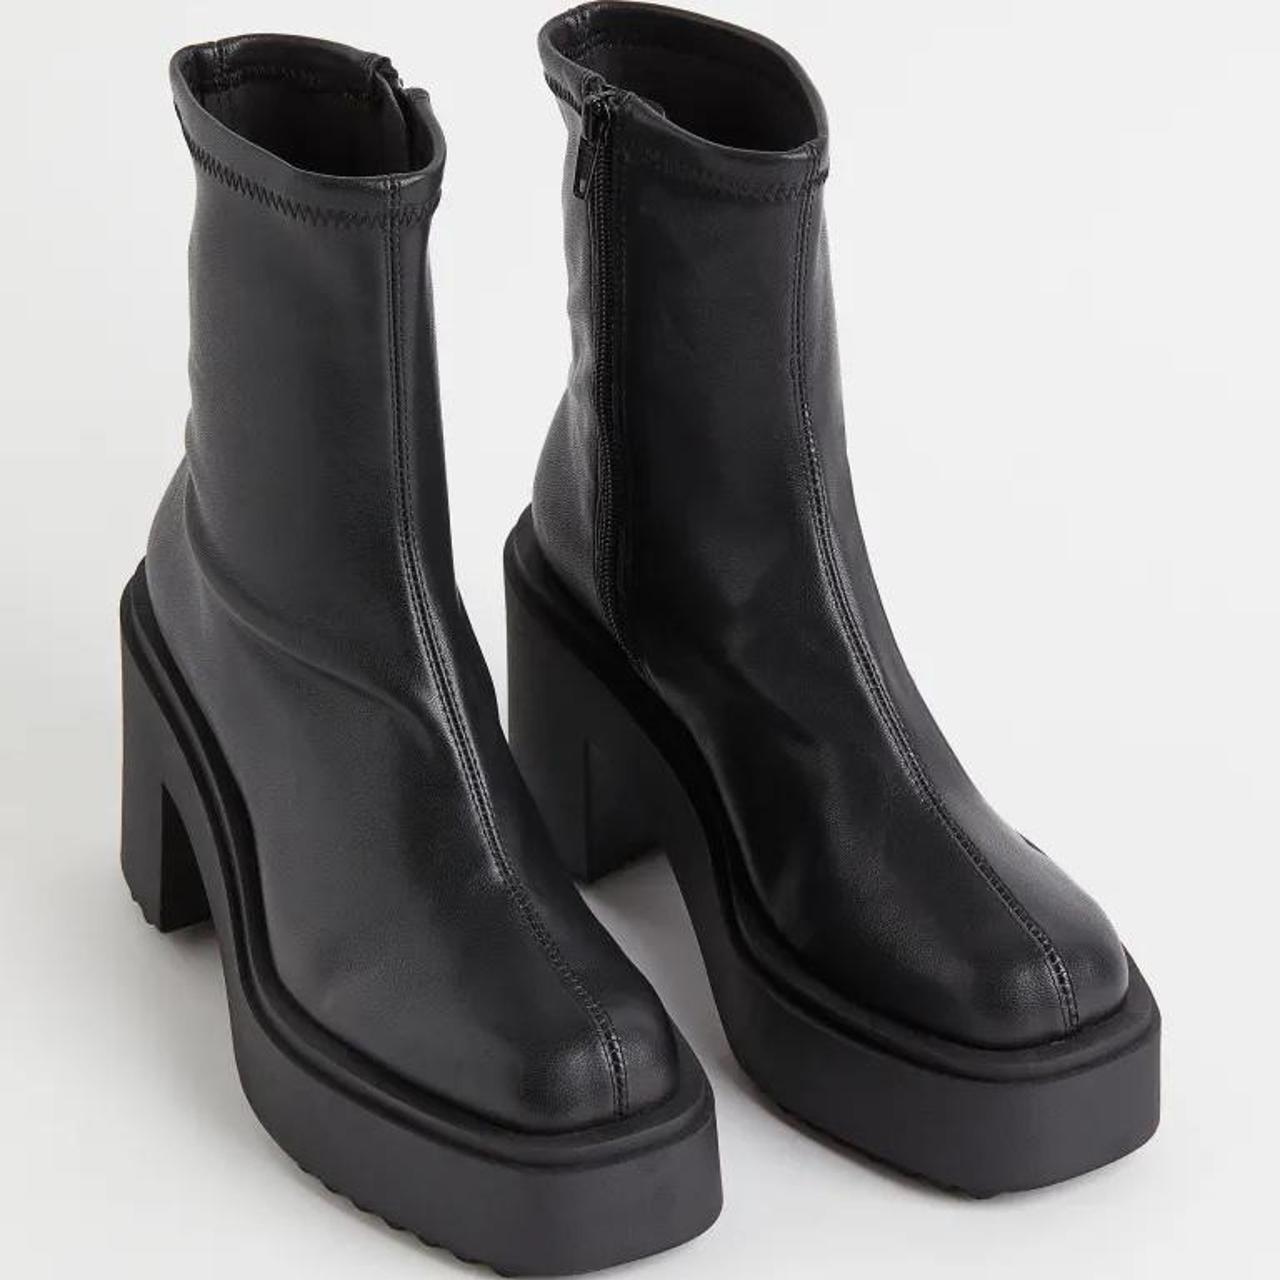 H&M faux leather square toe ankle boots. platform 1... - Depop